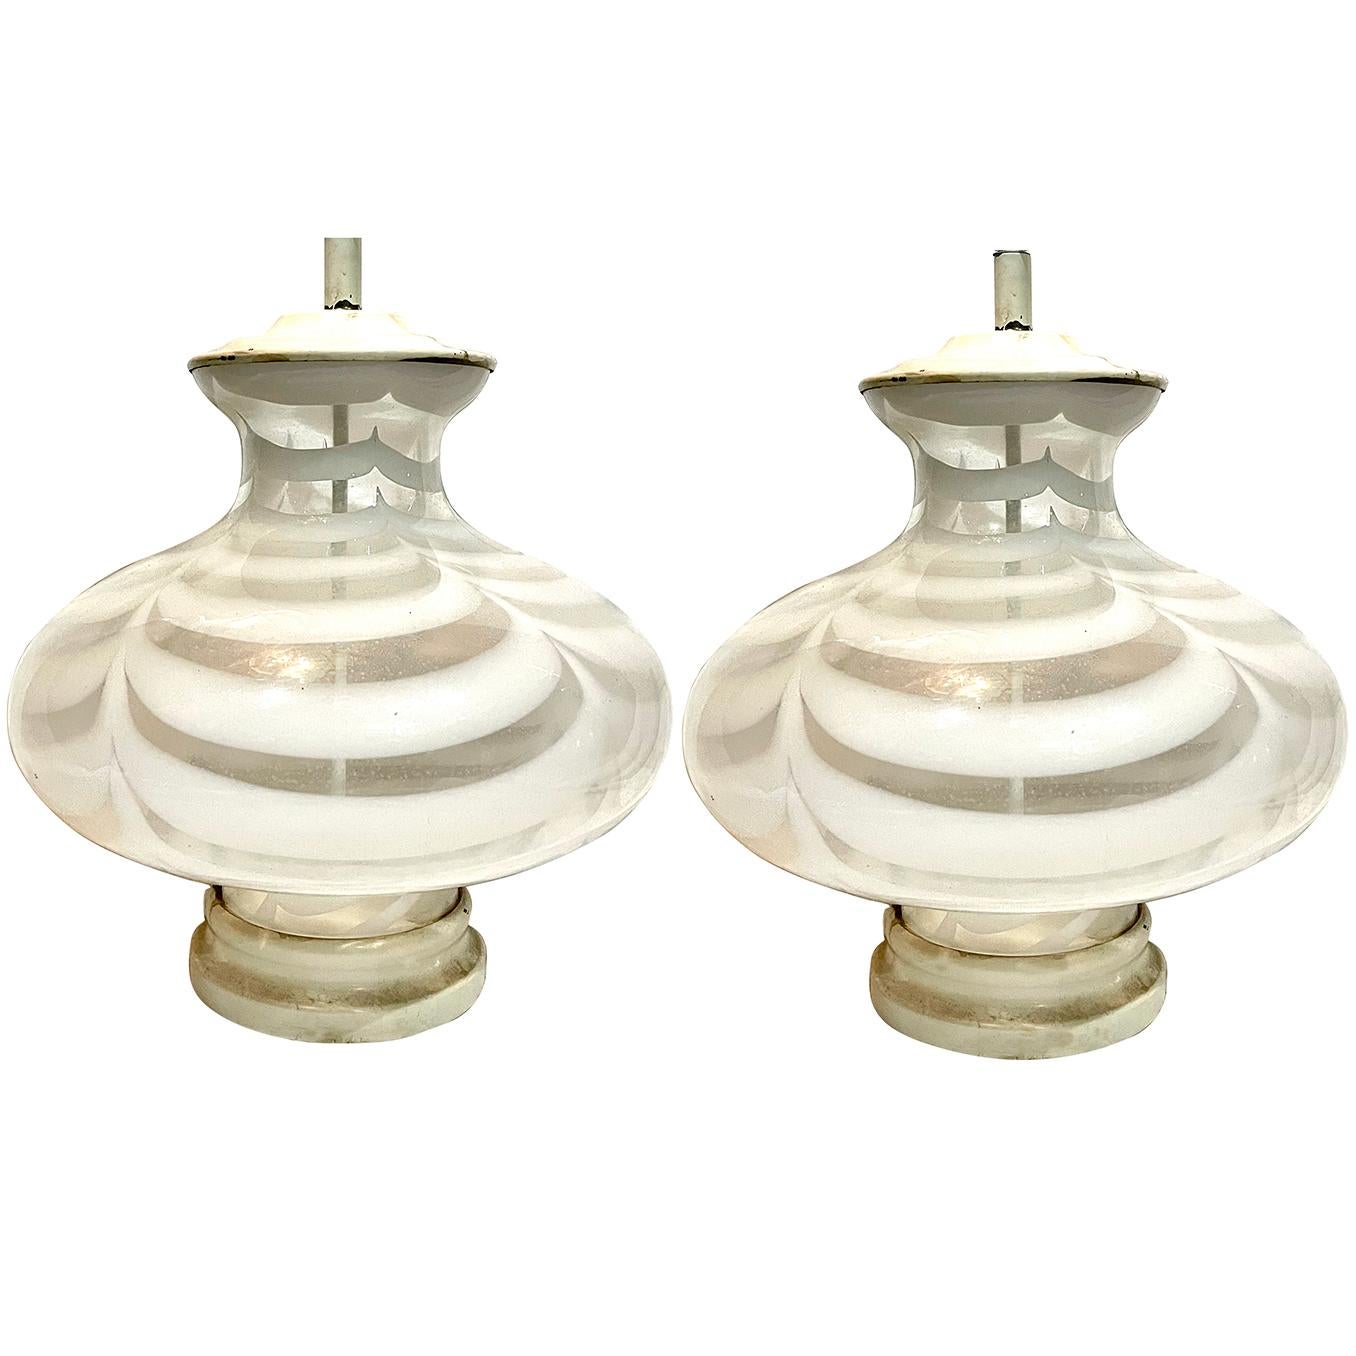 Une paire de lampes de table en verre soufflé à ruban de style Moderne italien des années 1960 en blanc et transparent.

Mesures :
Hauteur du corps : 16
Diamètre : 16